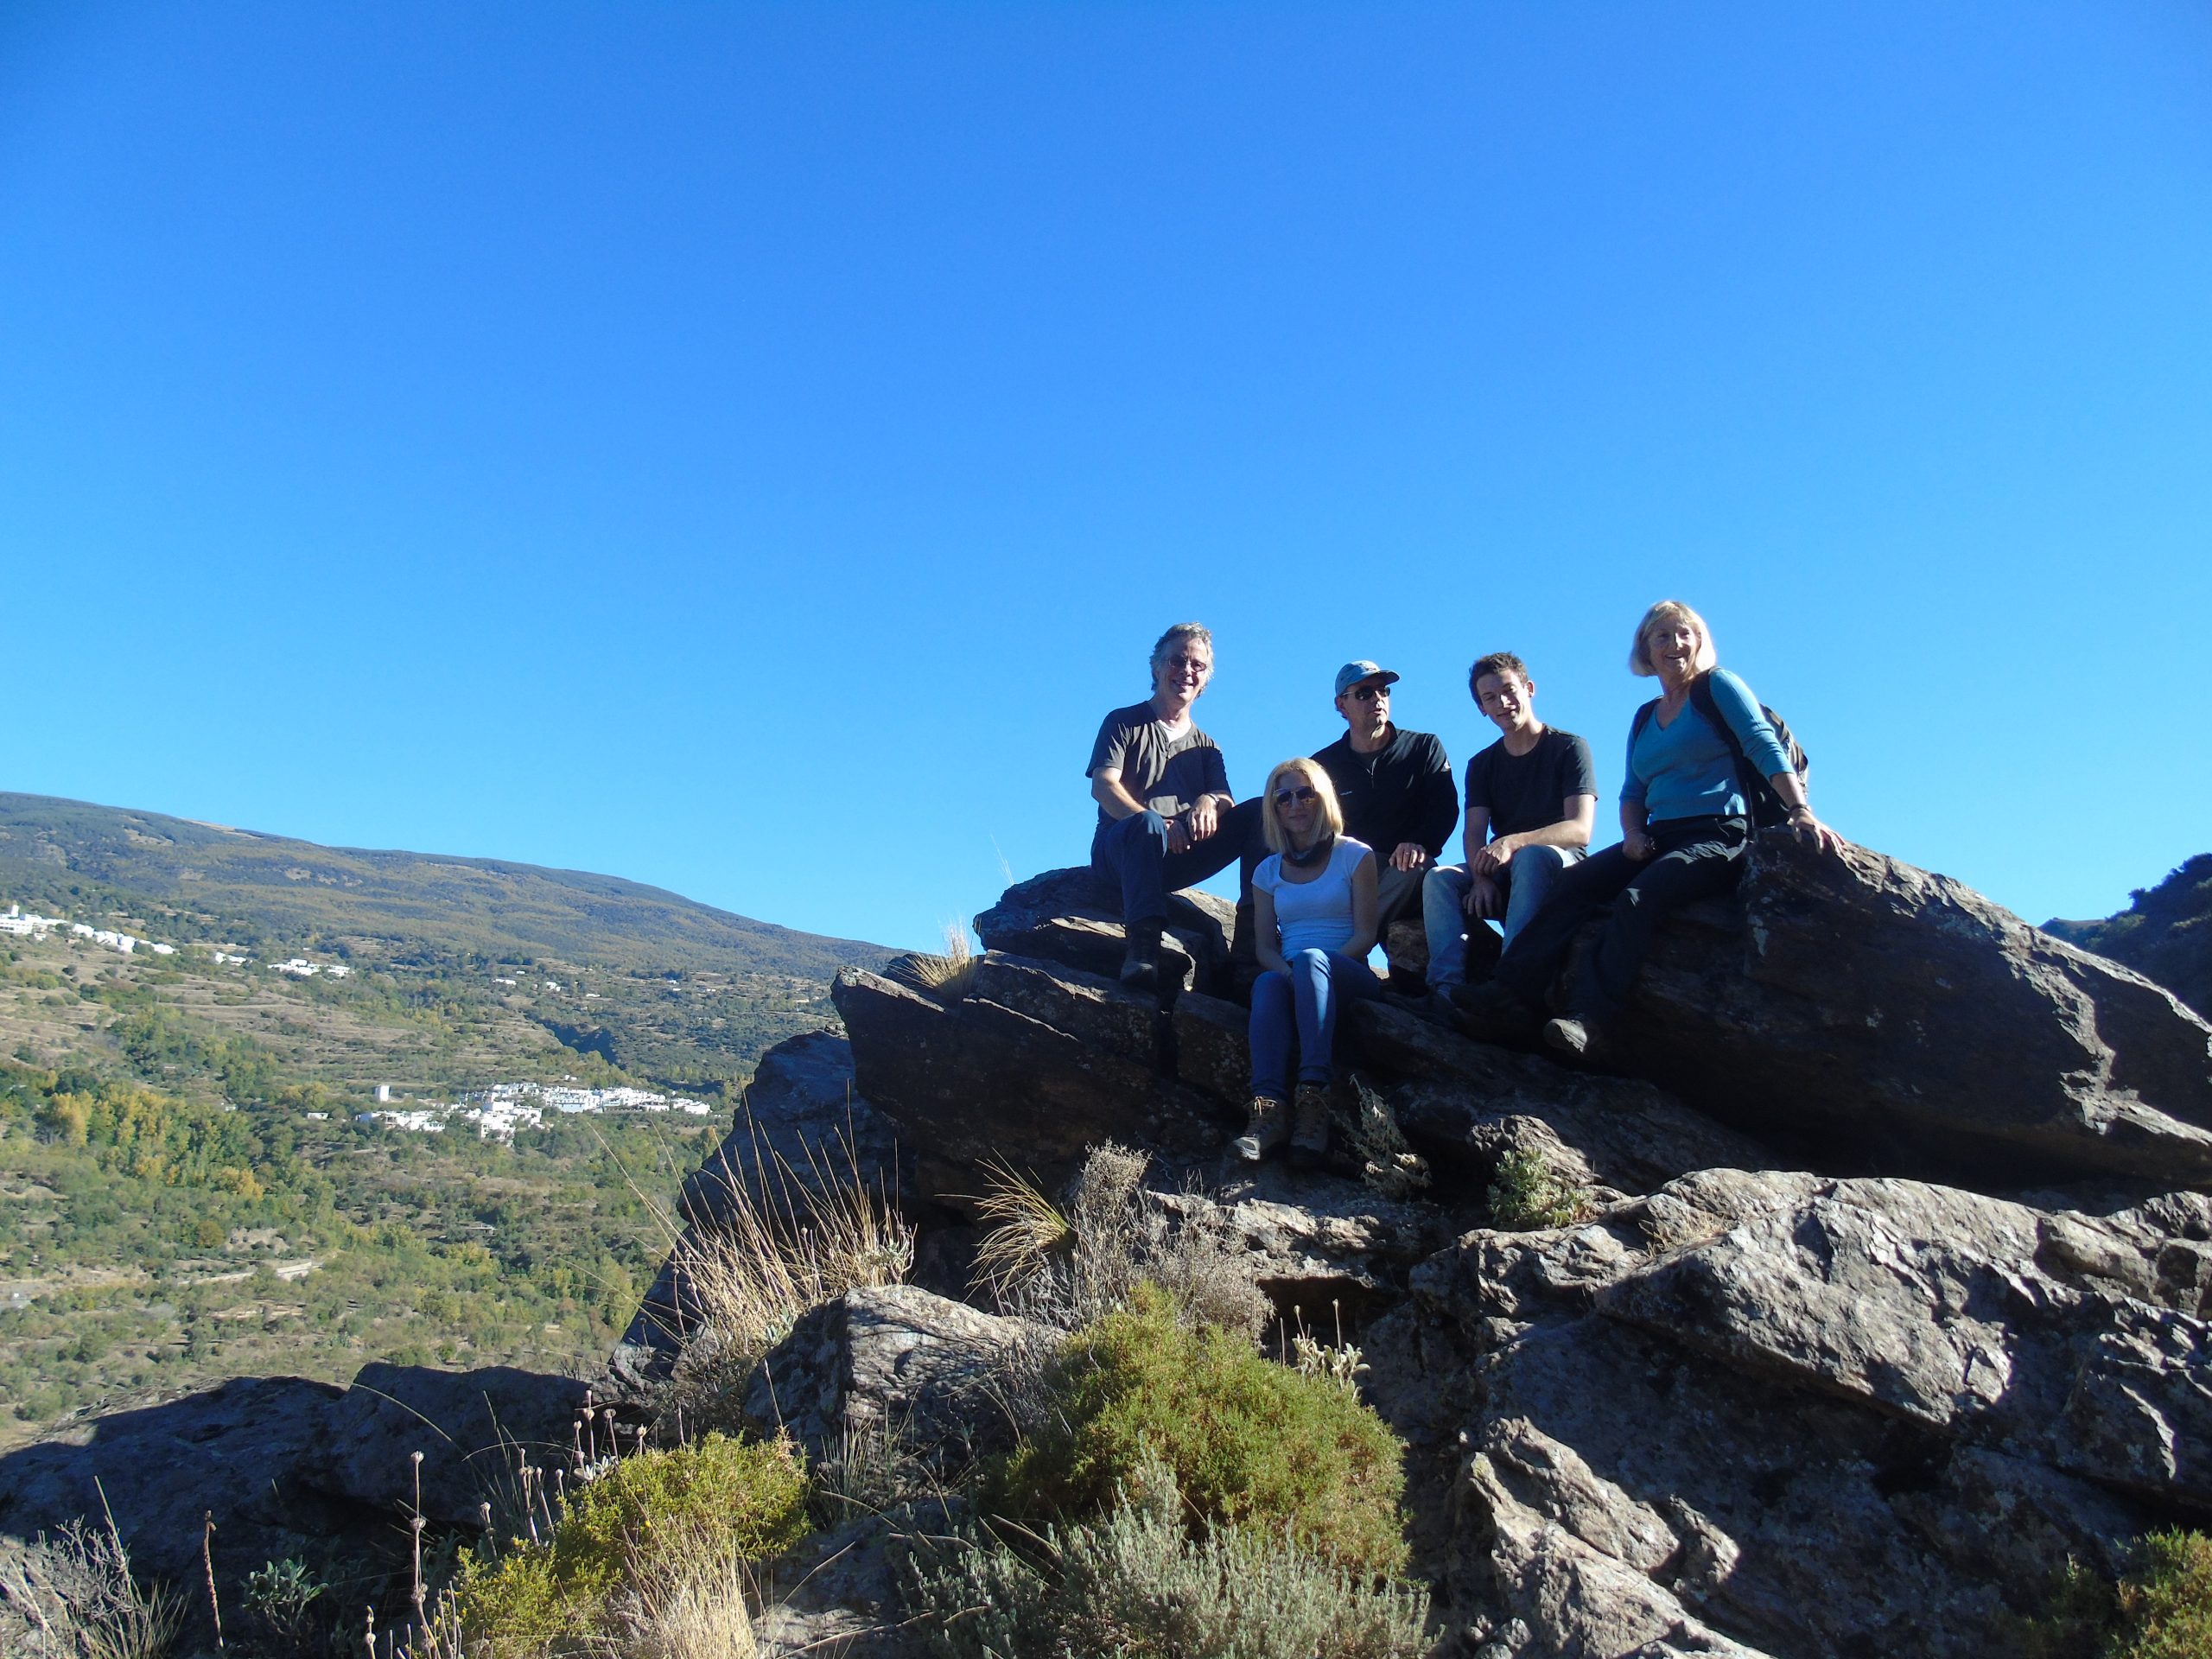 Llamando a los aventureros: La Alpujarra en el sur de España es justo lo que estás buscando